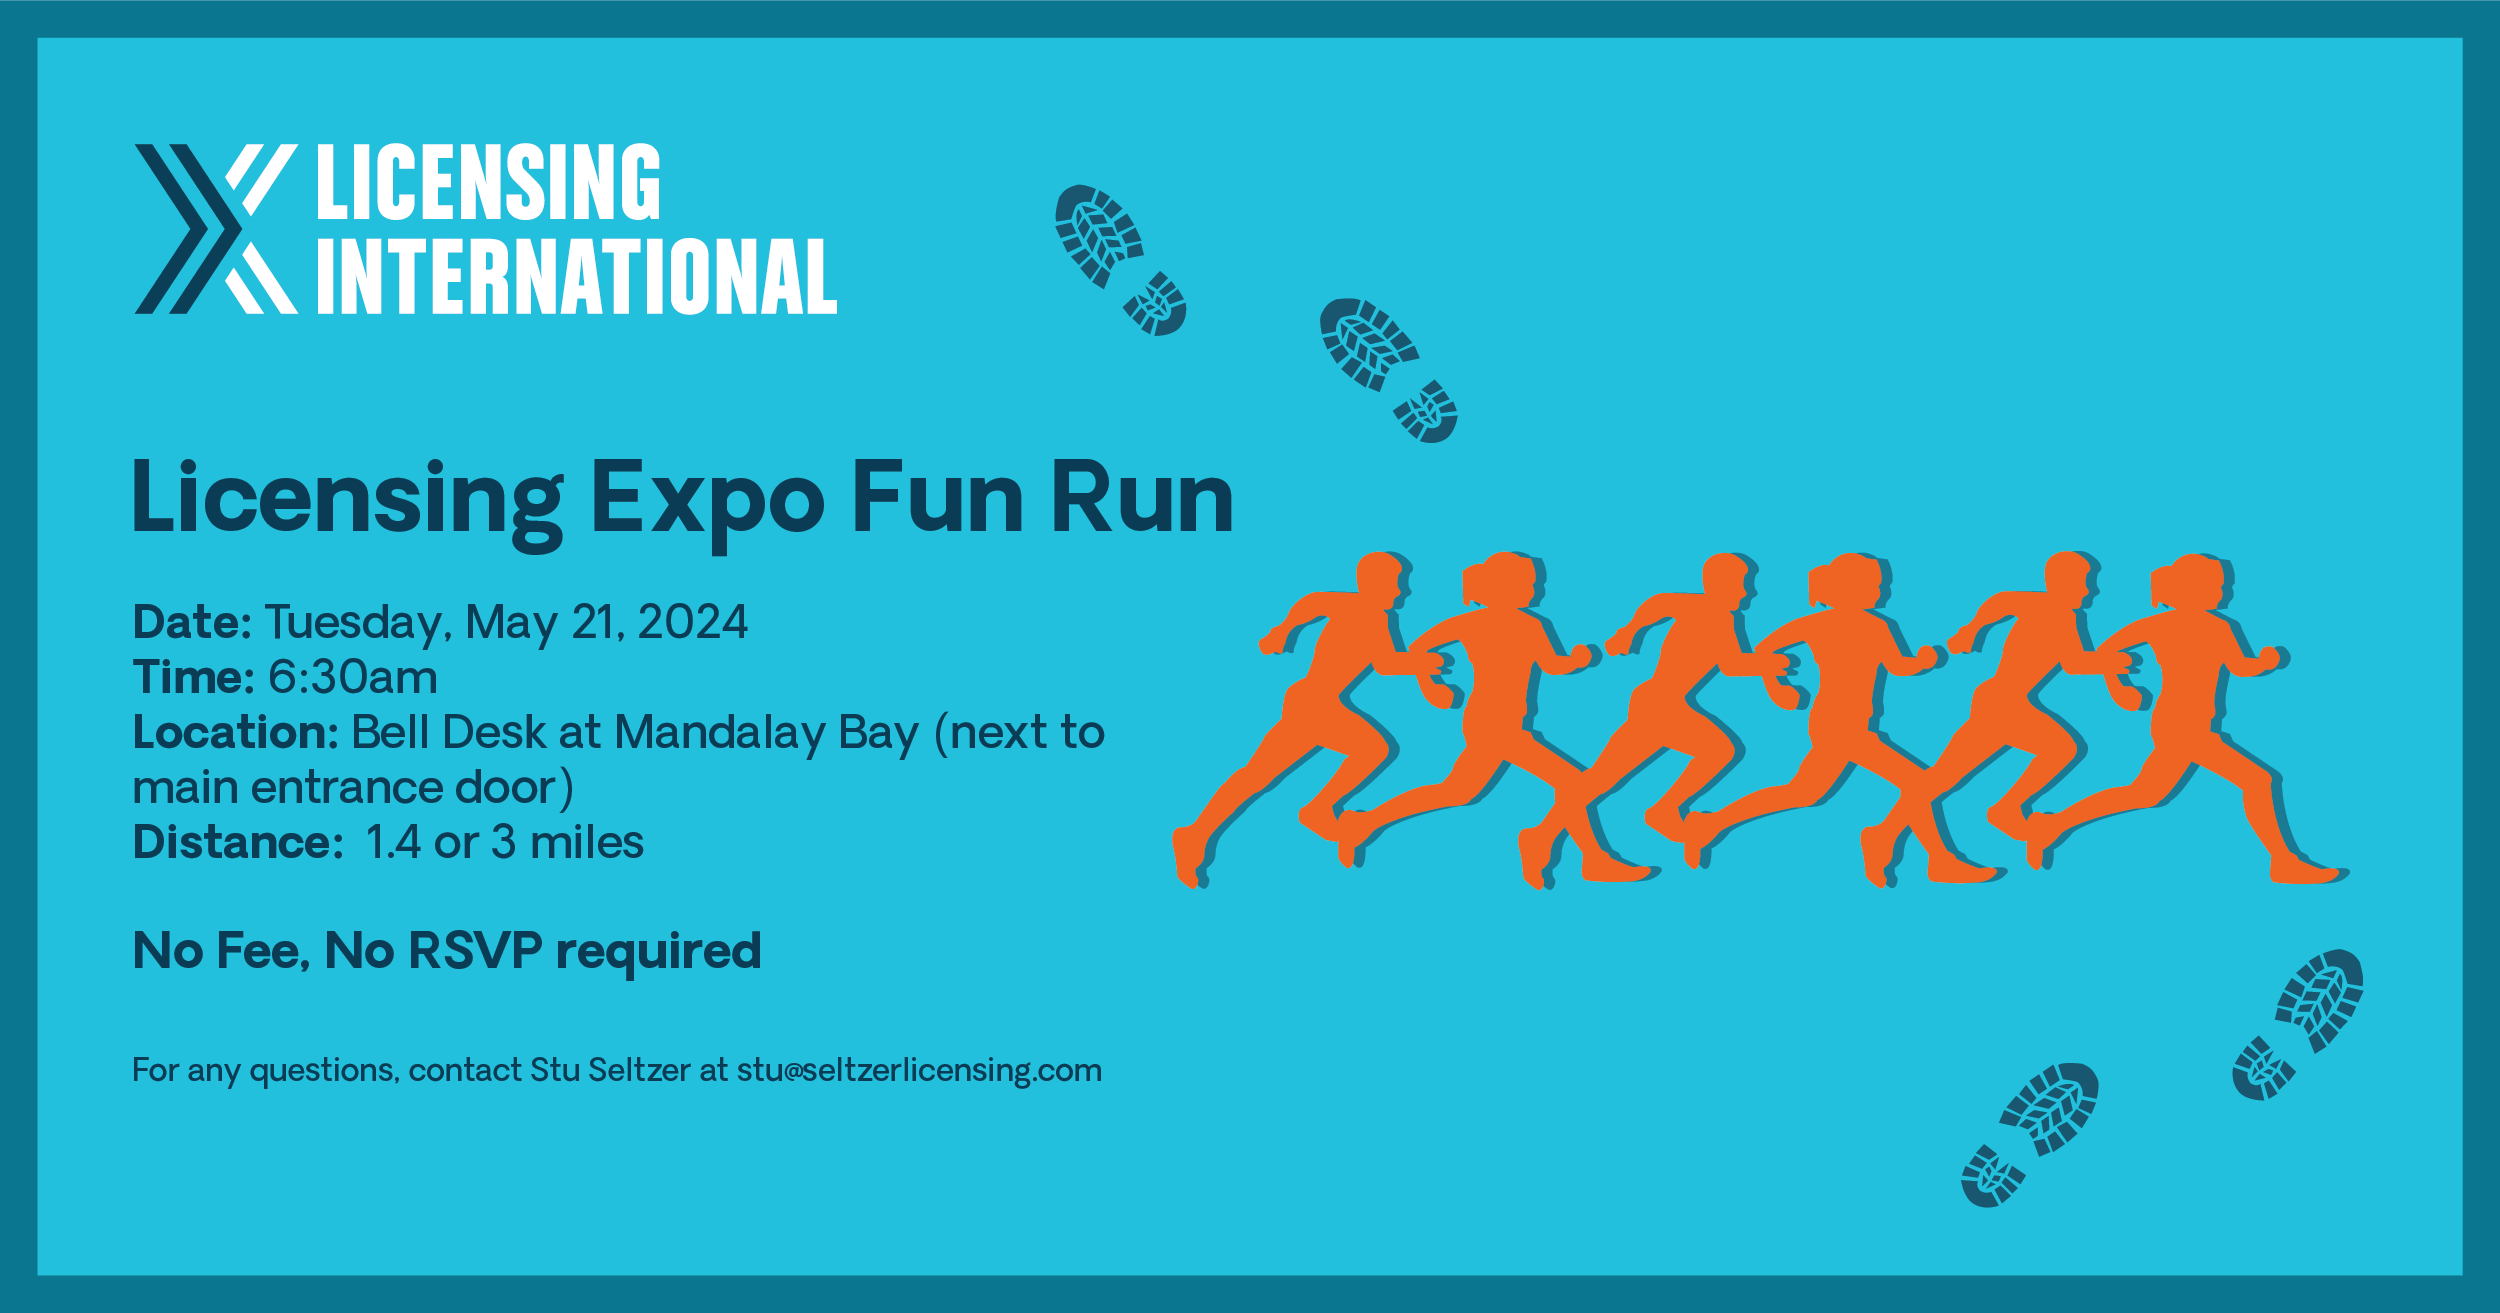 Licensing Expo Fun Run 2024 image